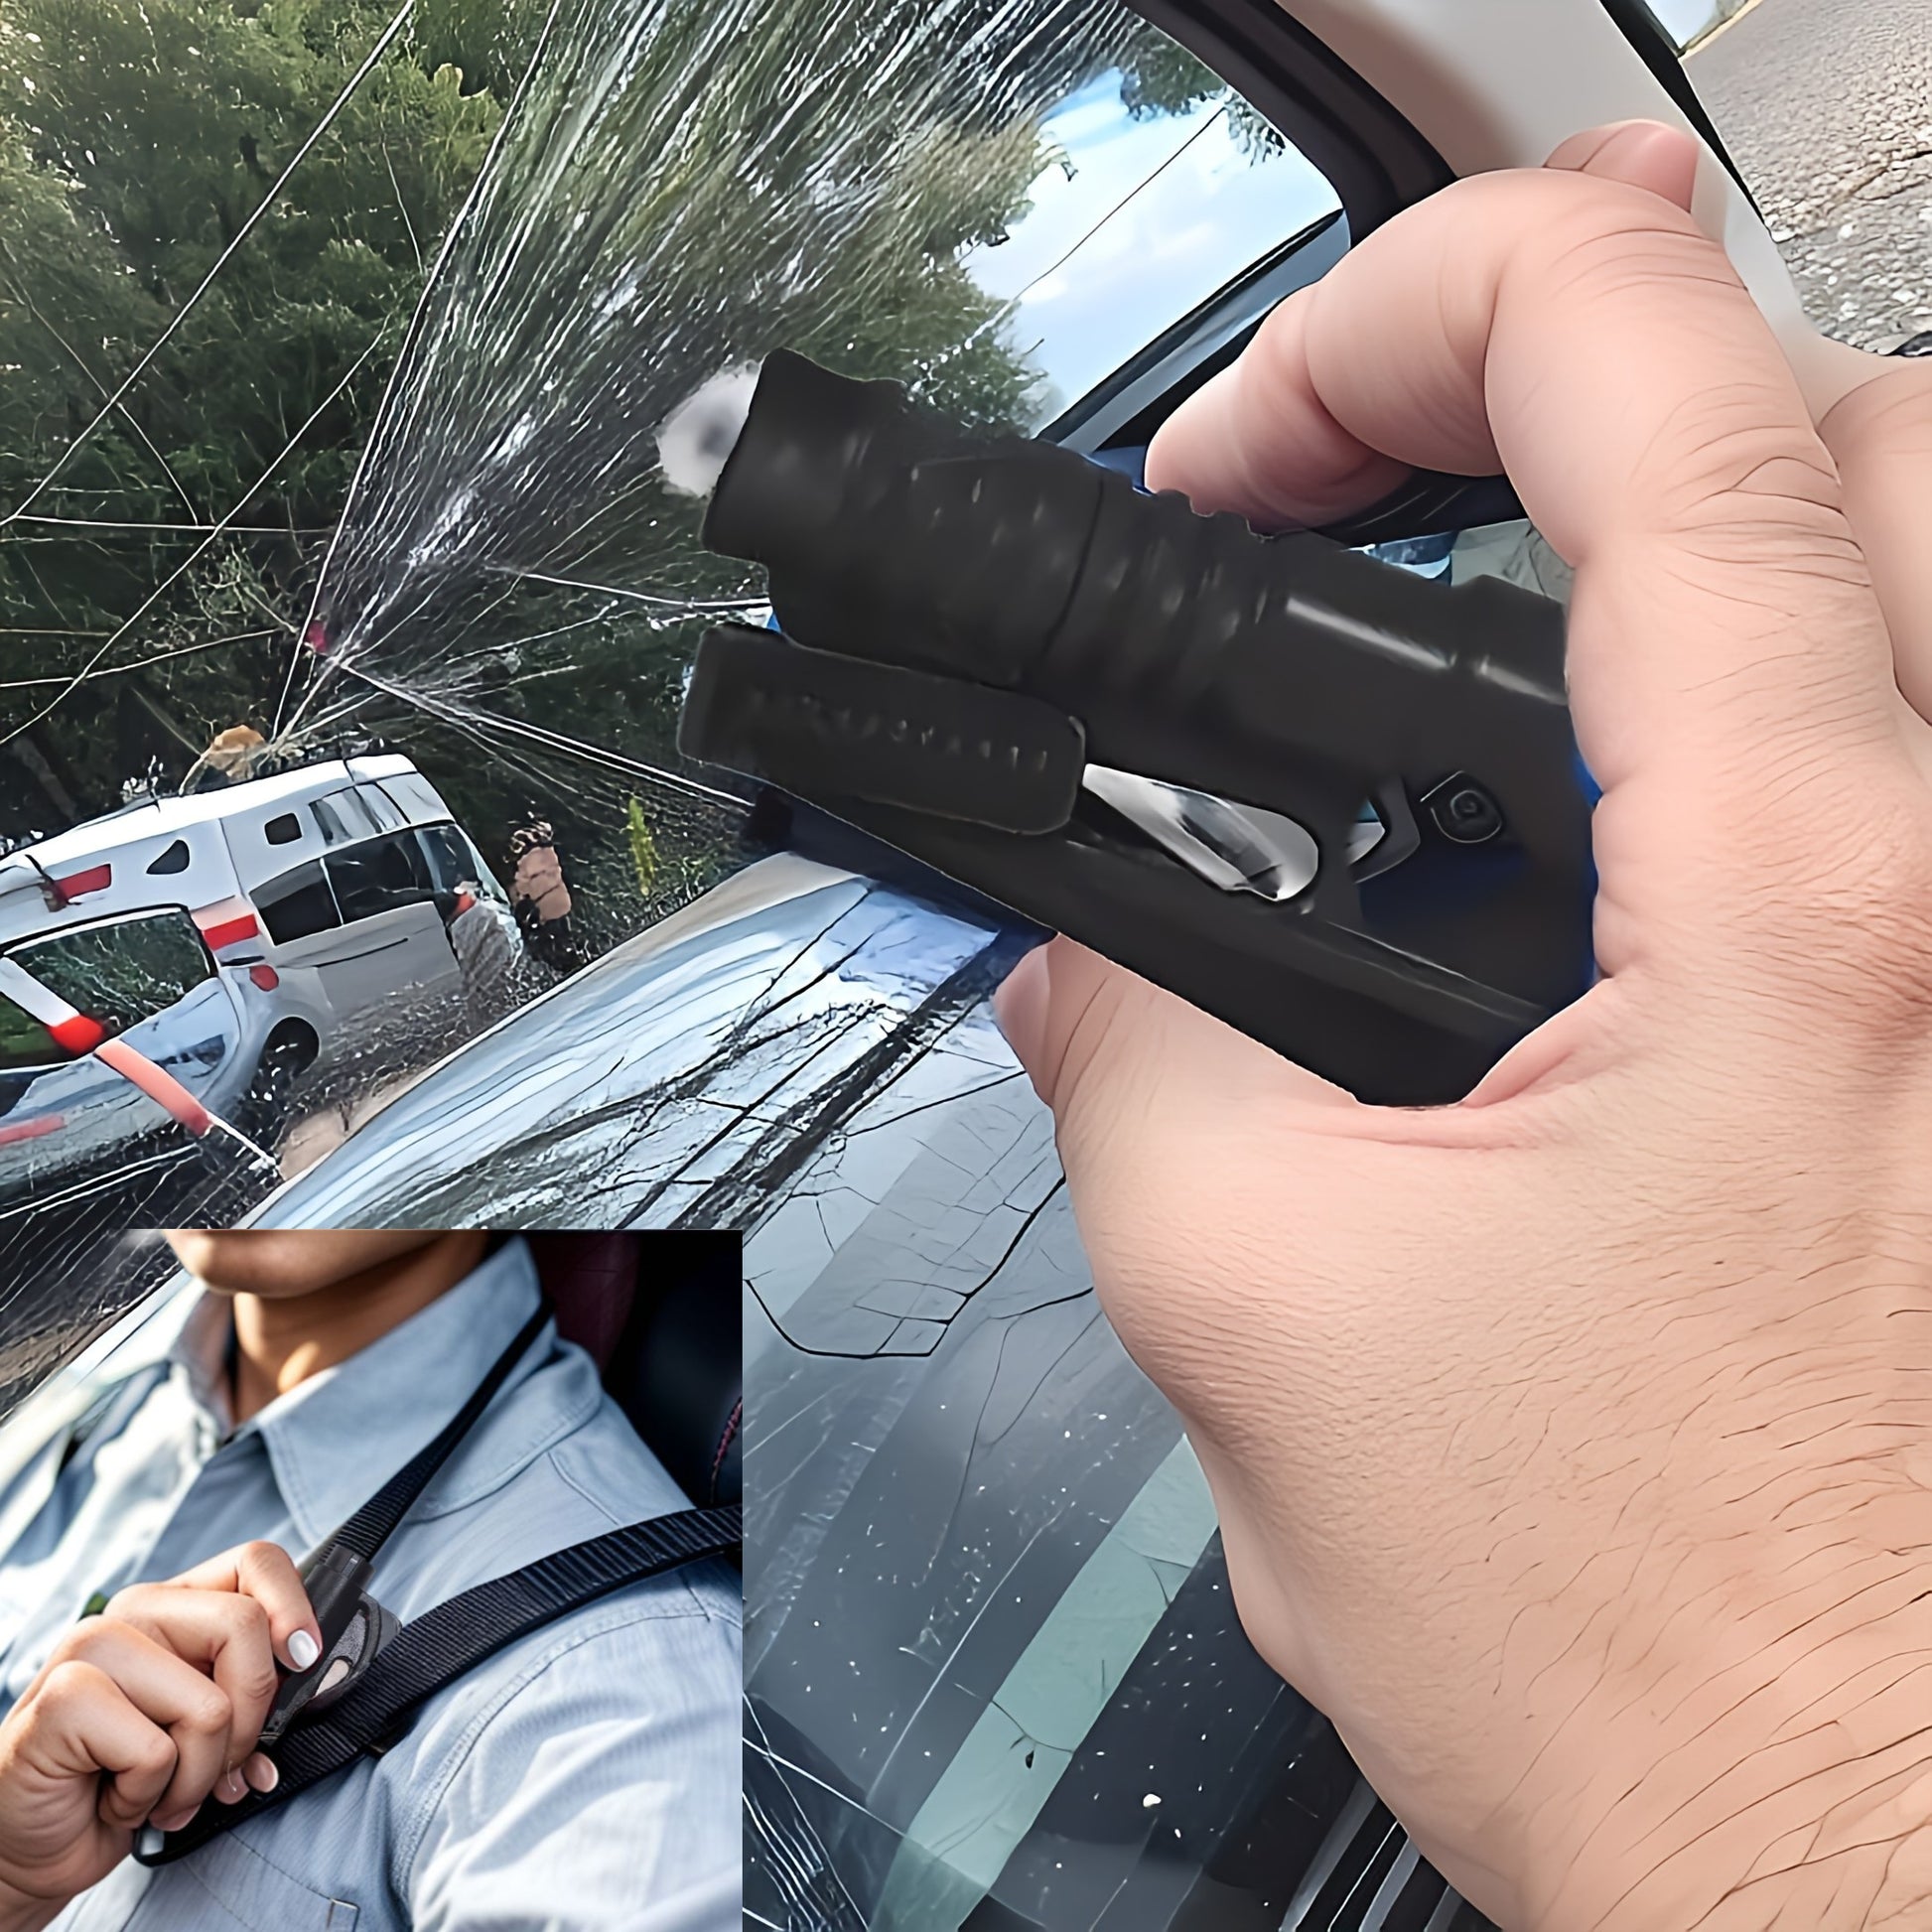 Auto 2in1 Rettungstool für Unfälle zum Selbstretten und Helfen, Glashammer & Anschnallgurt Gurtmesser Gurtschneider mit integrierten Schlüssel Ring + Montageplatte